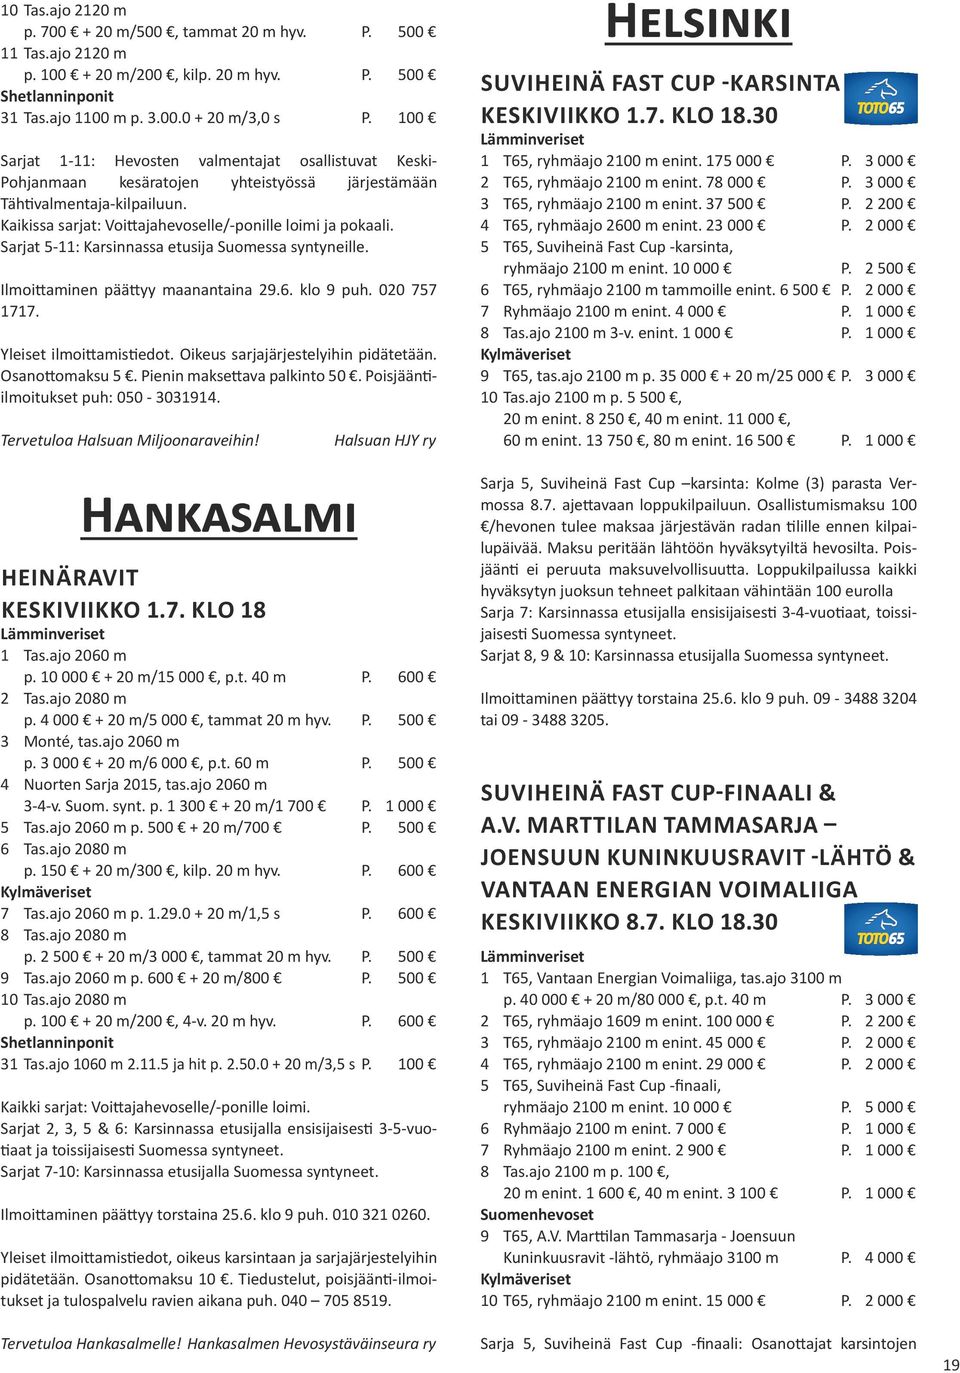 Sarjat 5-11: Karsinnassa etusija Suomessa syntyneille. Ilmoittaminen päättyy maanantaina 29.6. klo 9 puh. 020 757 1717. Osanottomaksu 5. Pienin maksettava palkinto 50.